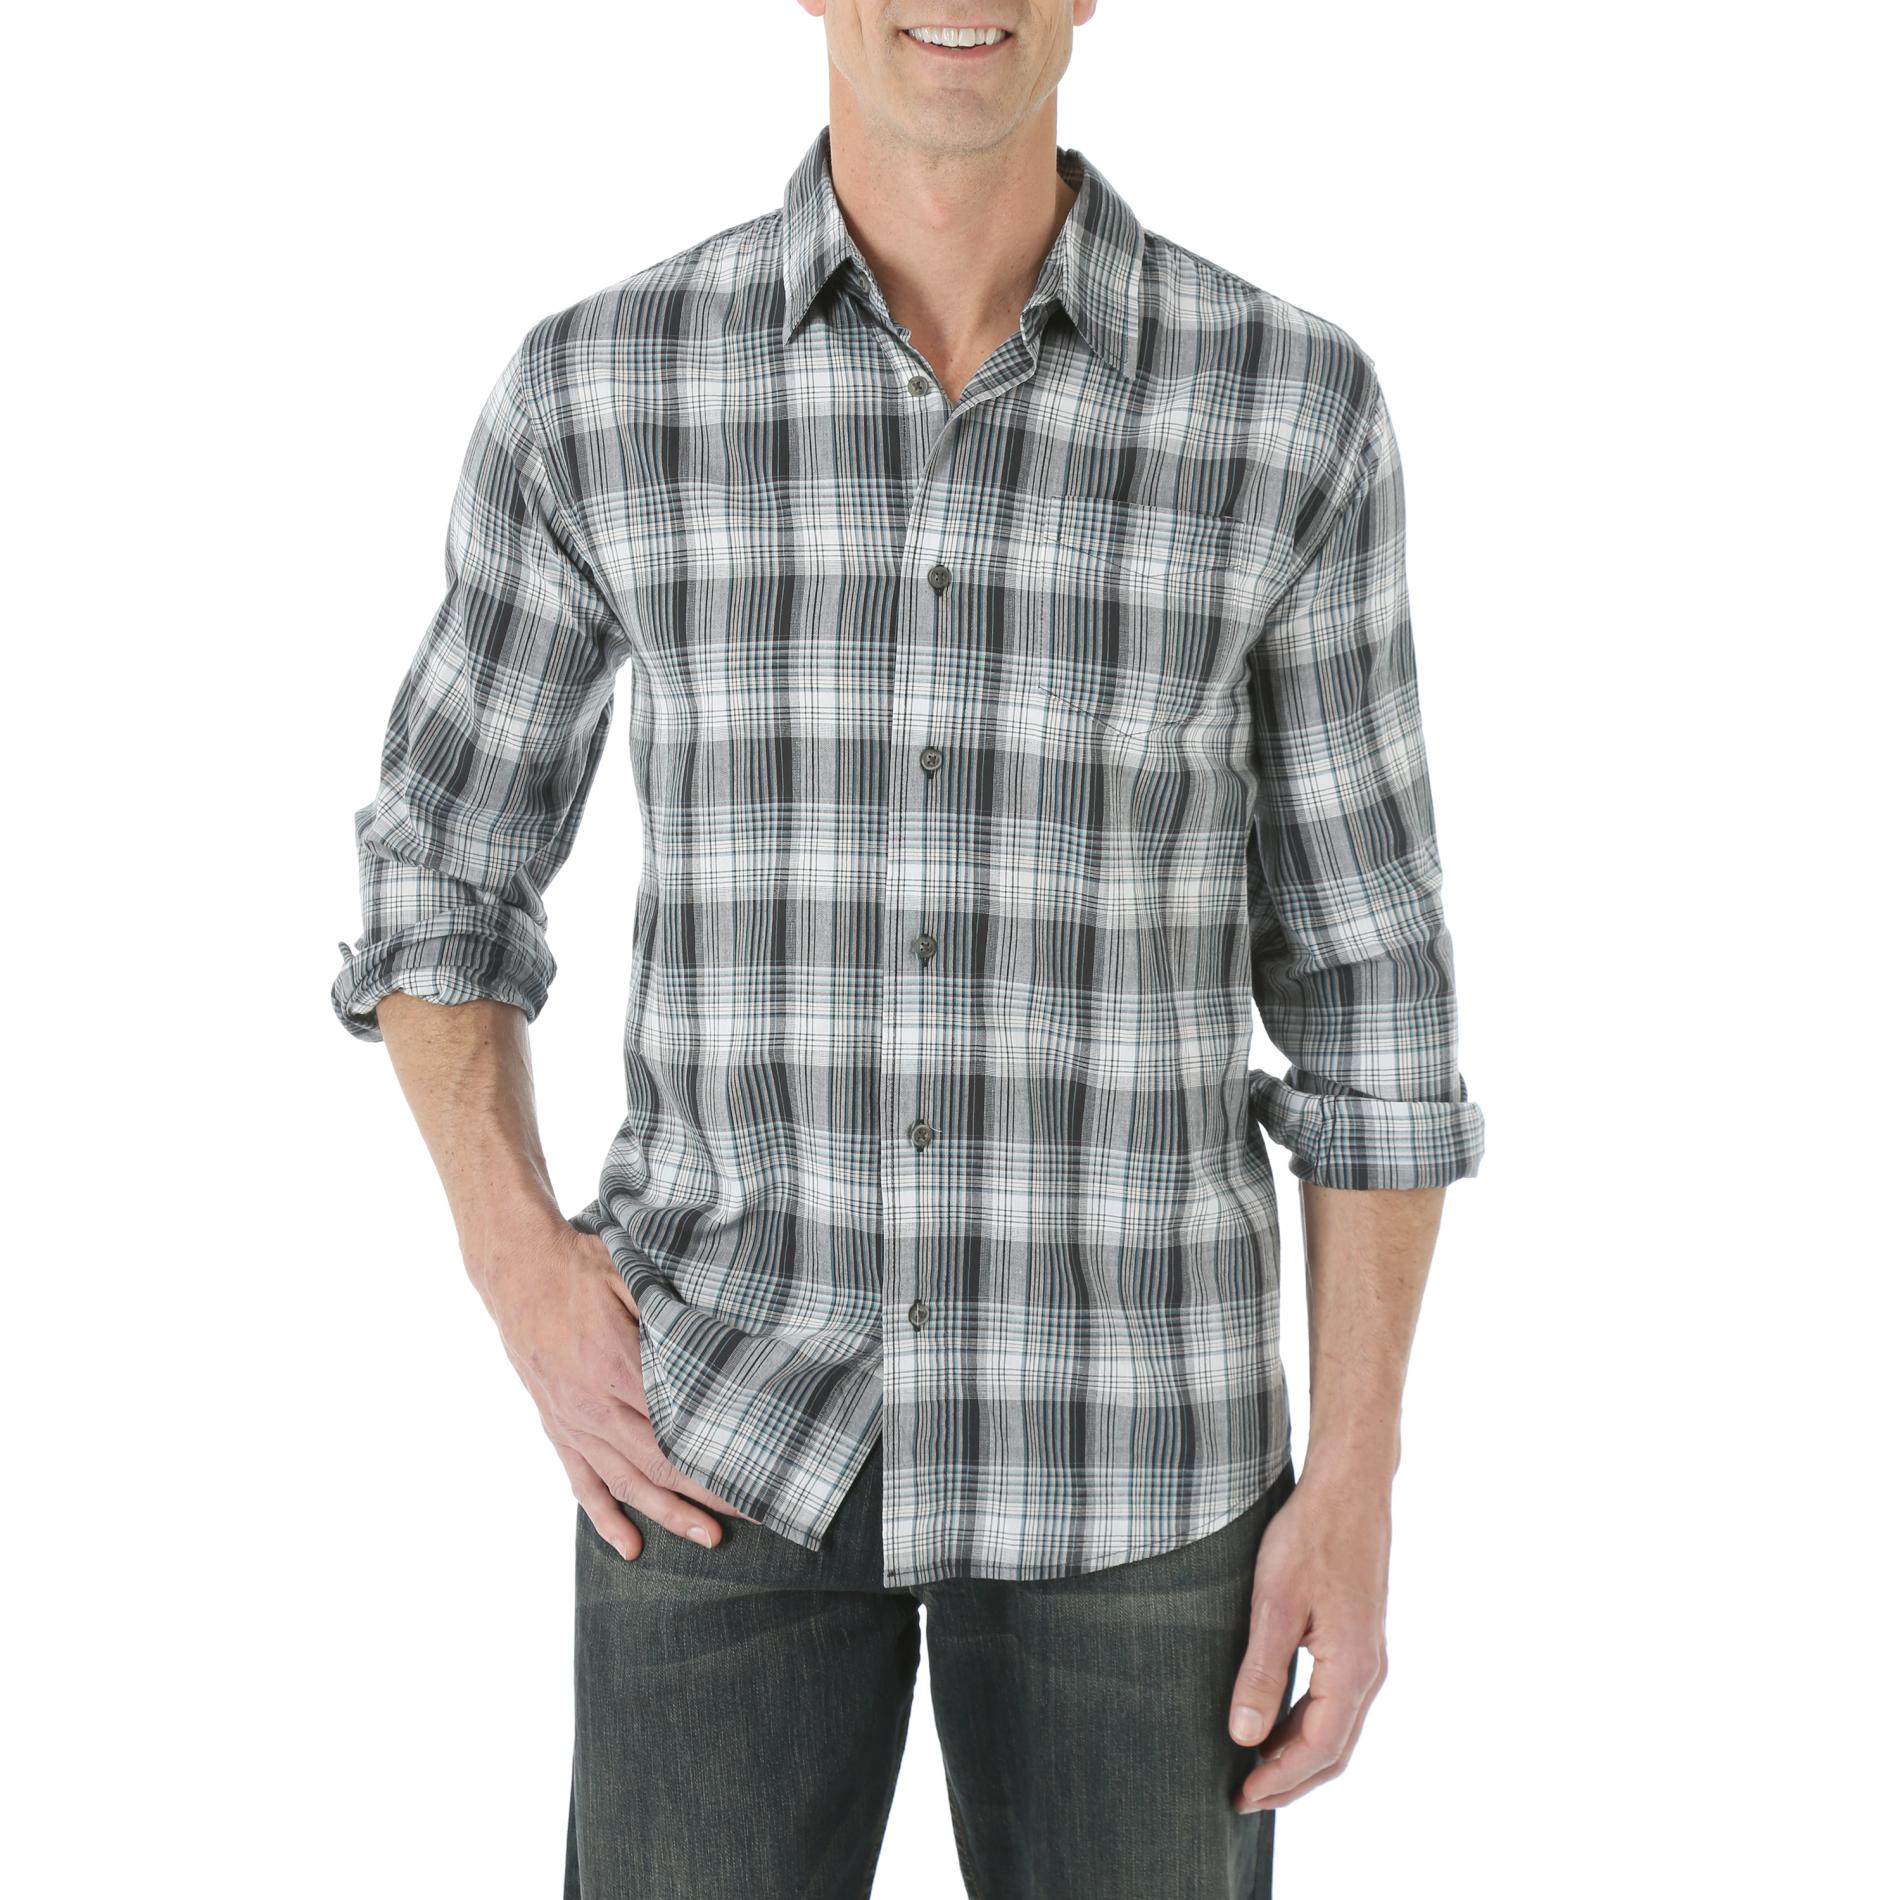 Wrangler Men's Woven Long-Sleeve Shirt - Plaid